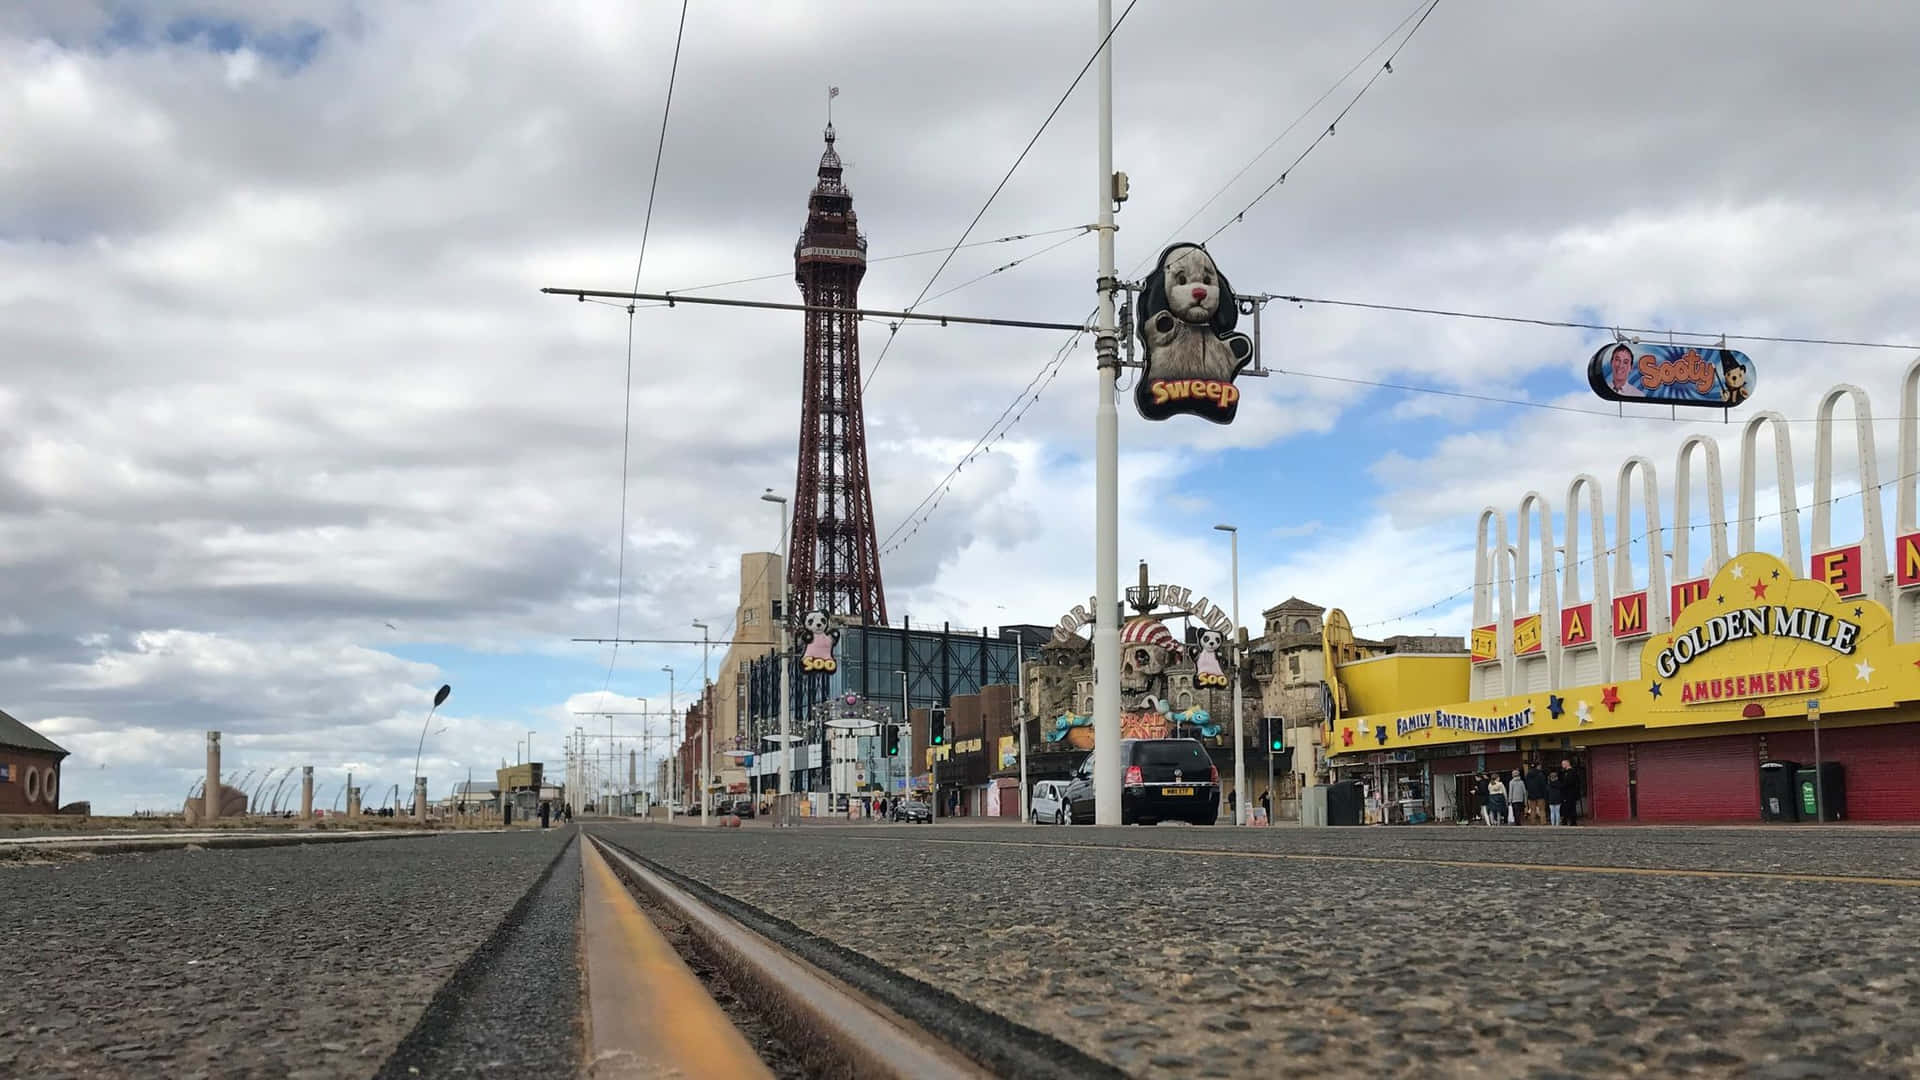 Blackpool-tårnet 2048 X 1152 Wallpaper